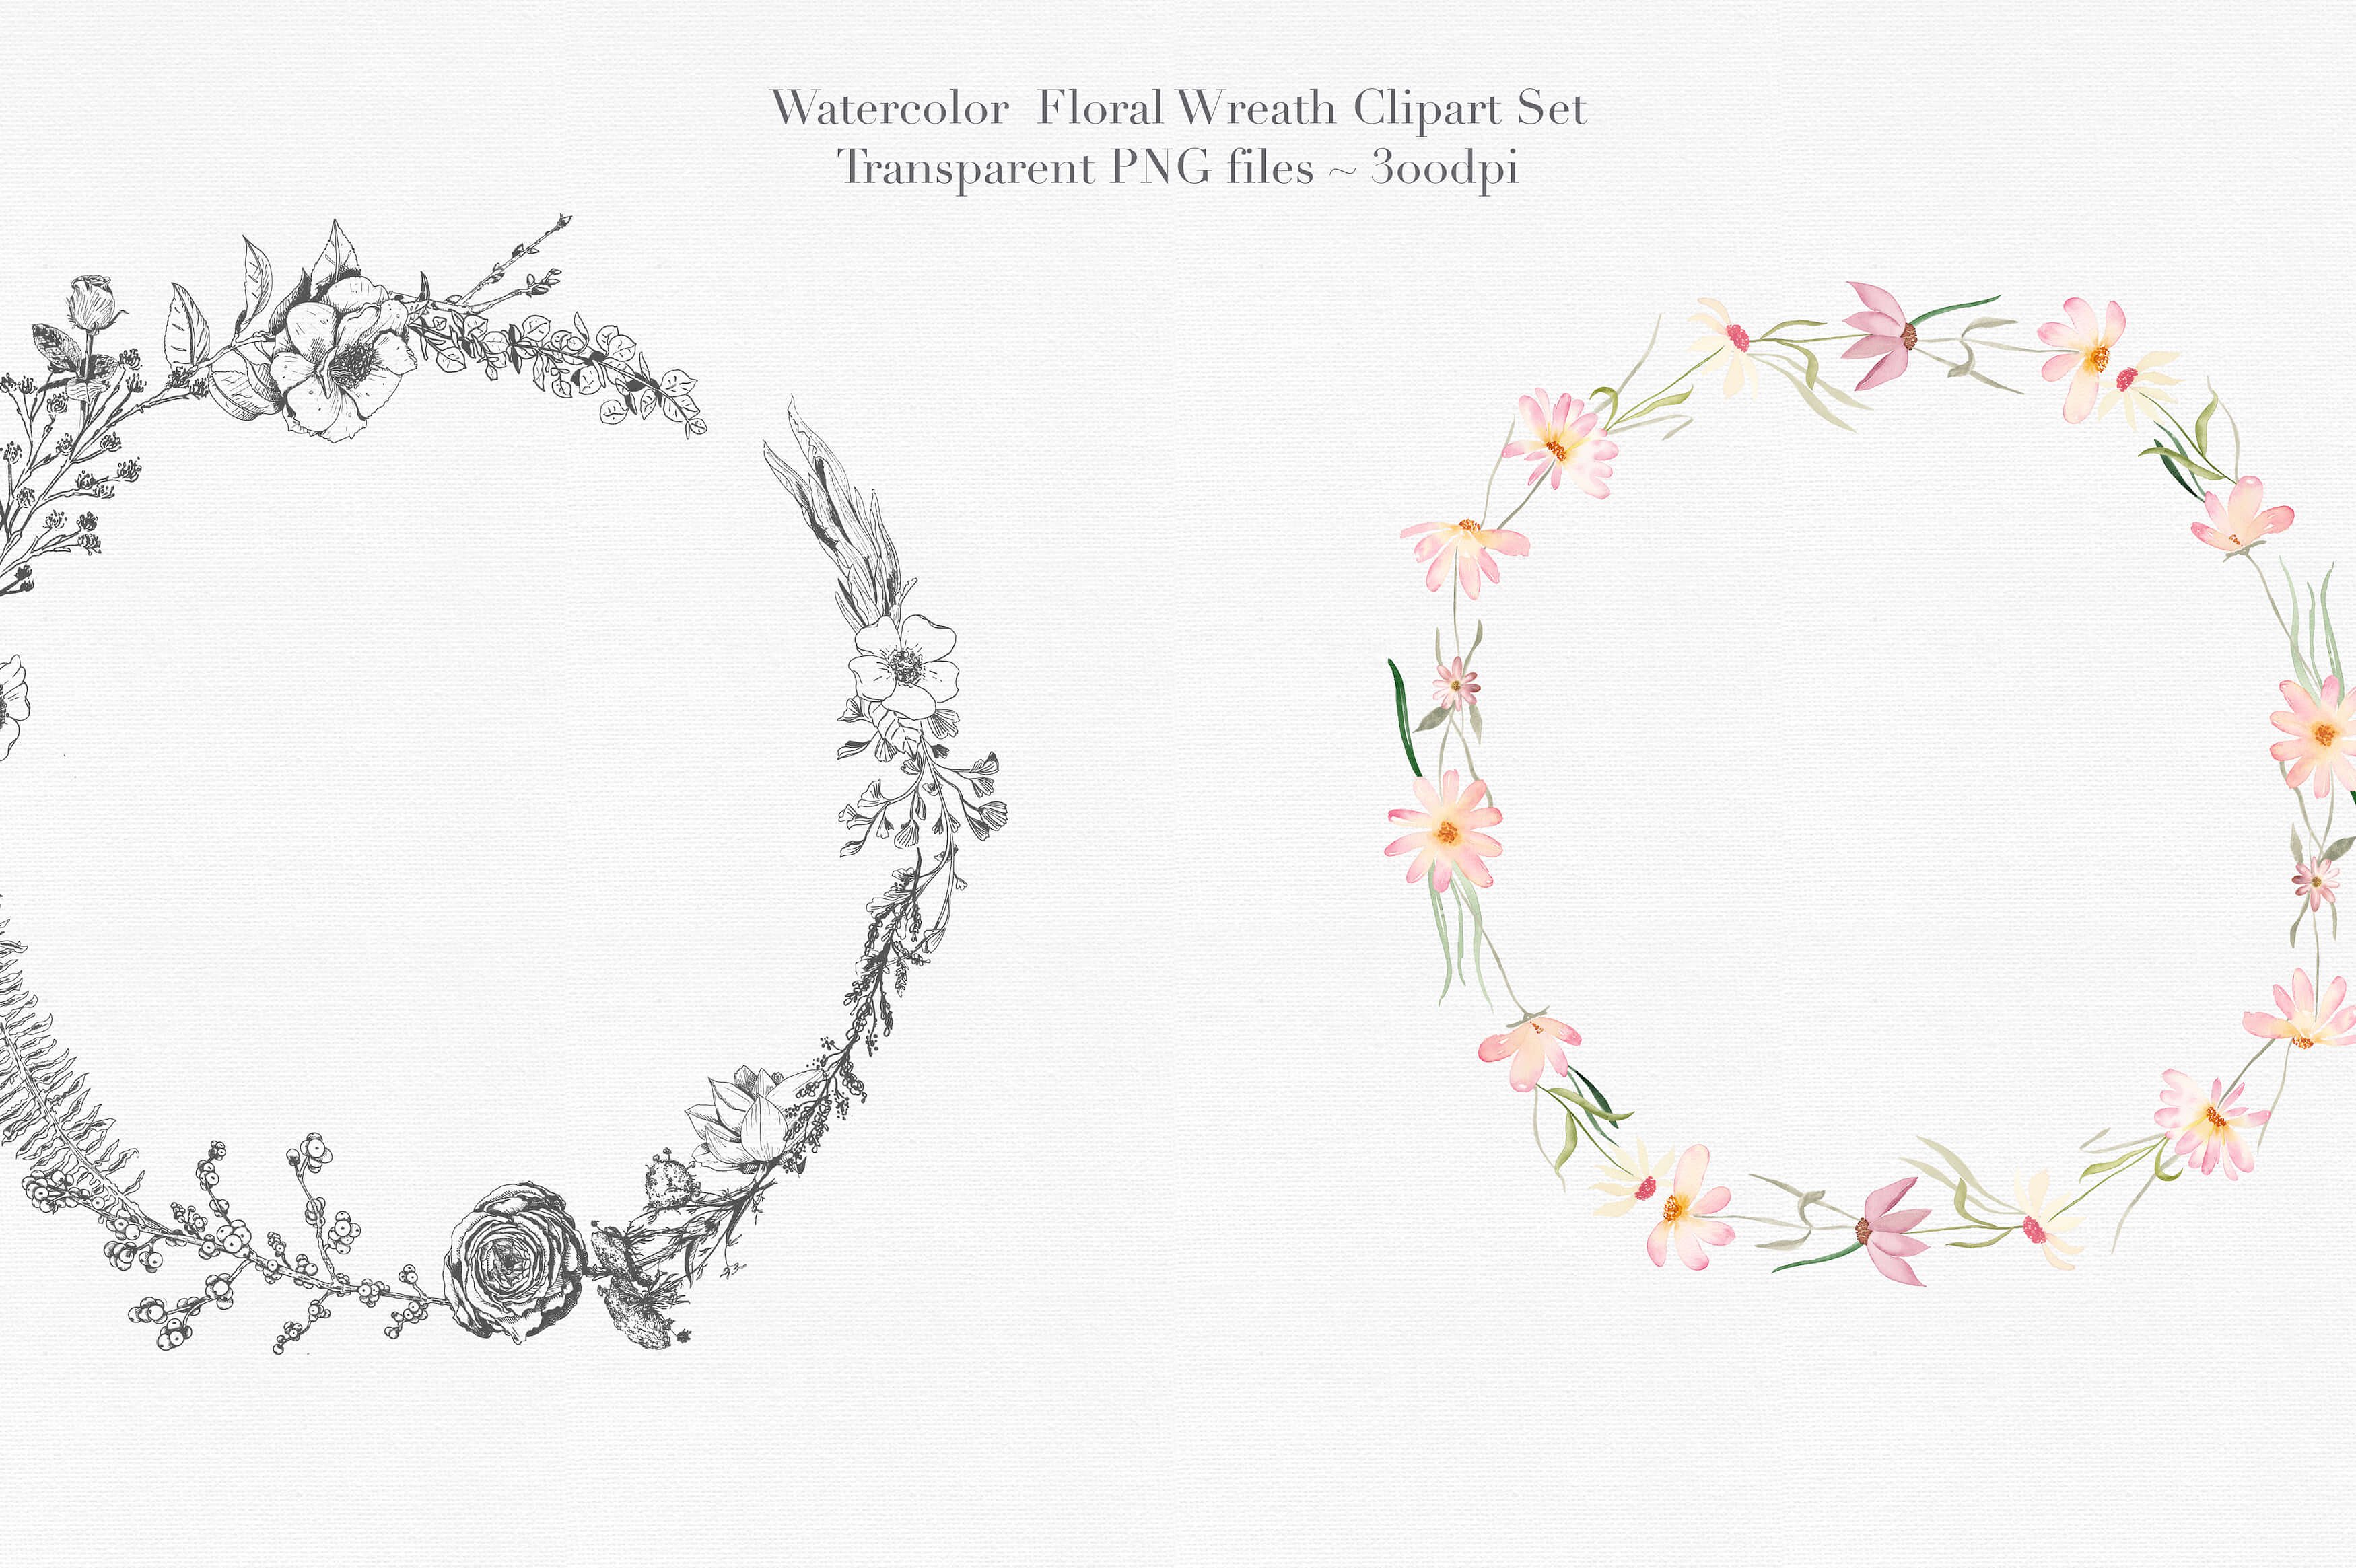 独特的手绘花卉花环剪贴画合集 Vol.3 Watercolor Floral Wreaths Vol.3插图(3)